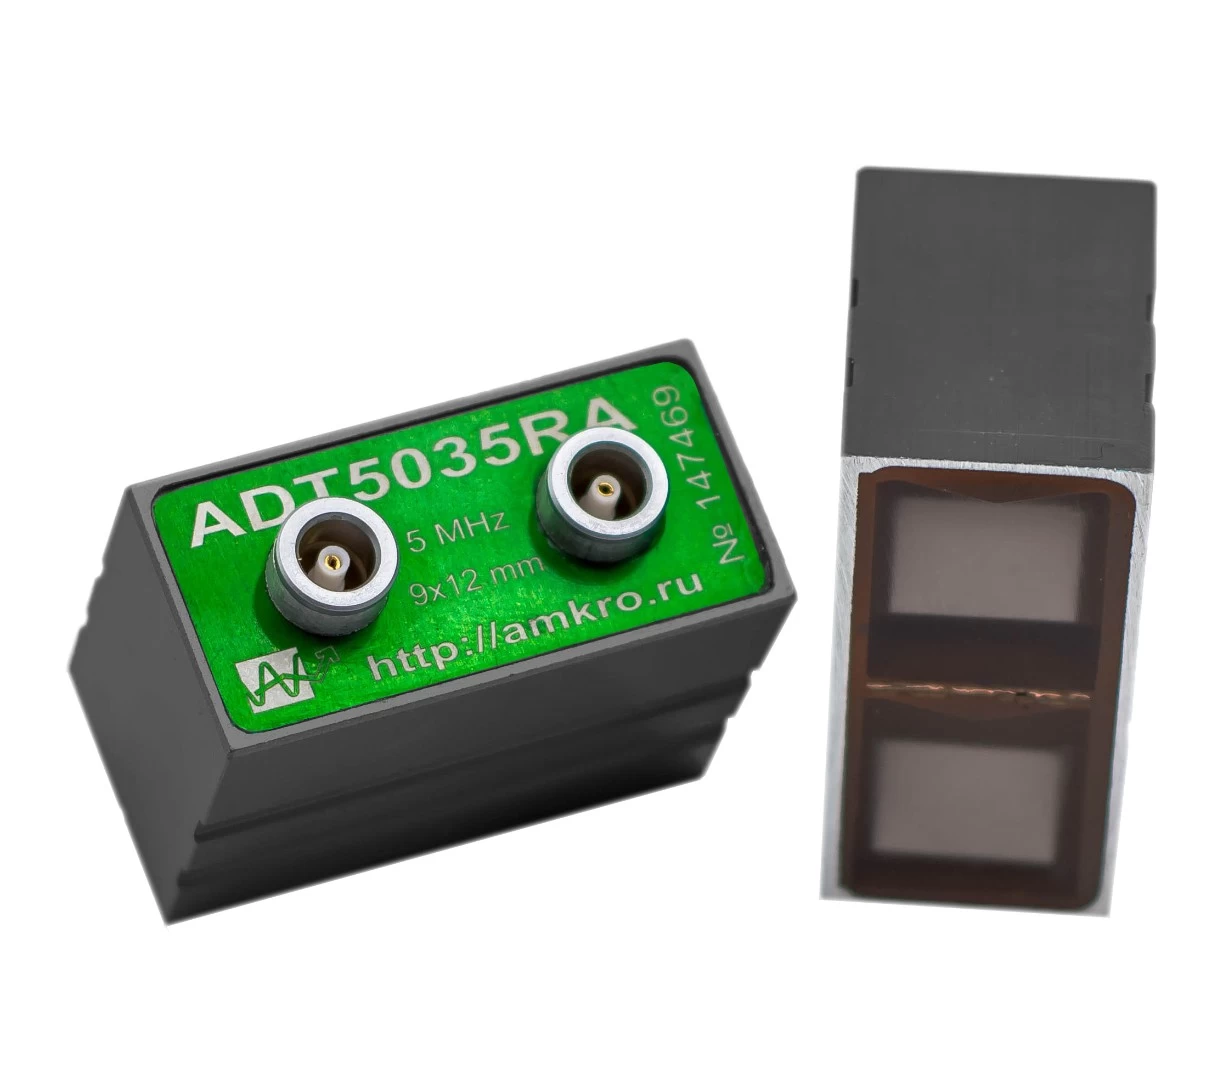 ADT5035RA (аналог ПН2Ц-35-2) наклонный р/с тандемный преобразователь 5 МГц - 2